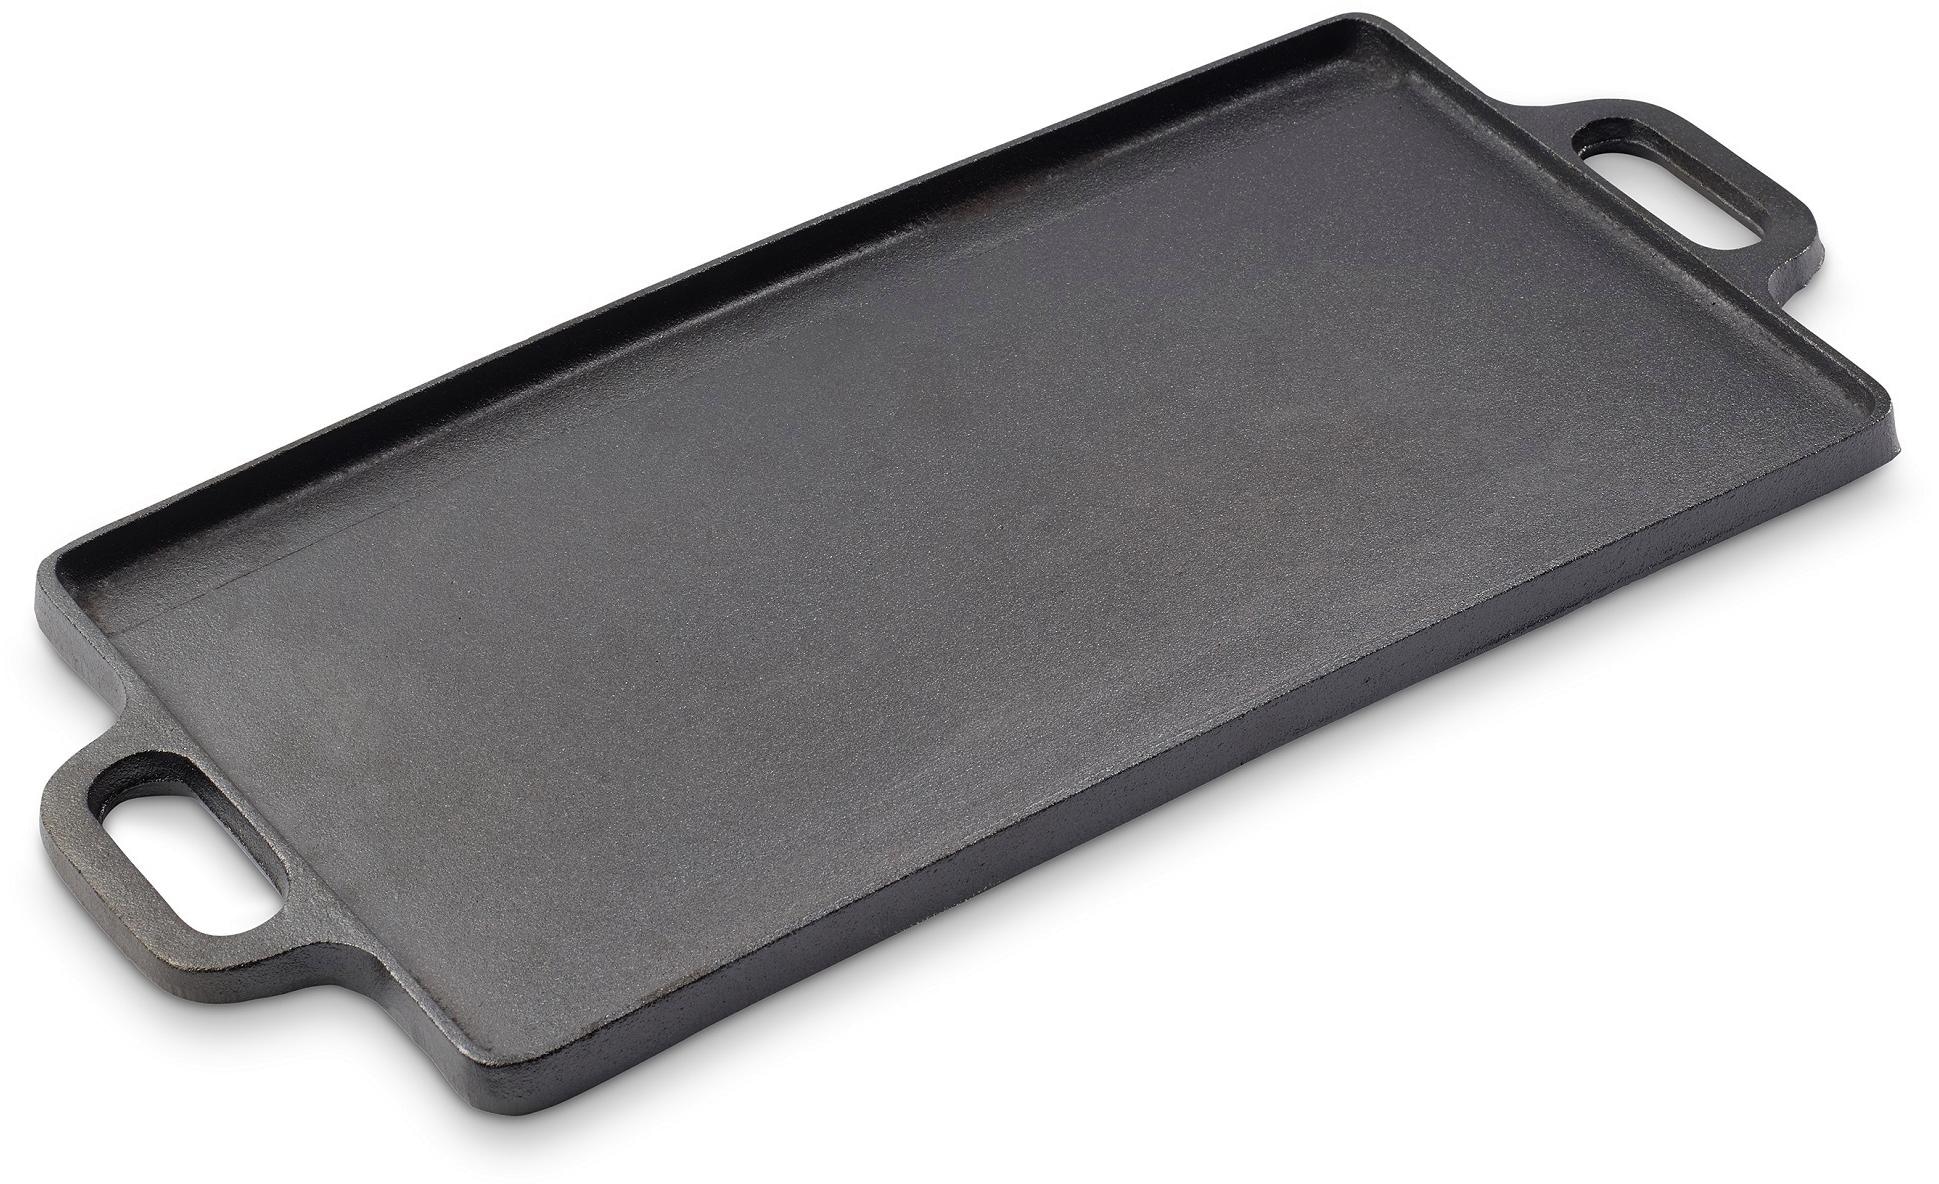 ECHTWERK Grillplatte »Big«, Grillpfanne aus Gusseisen, Emaille-Beschichtung, 50,5 x 23 cm